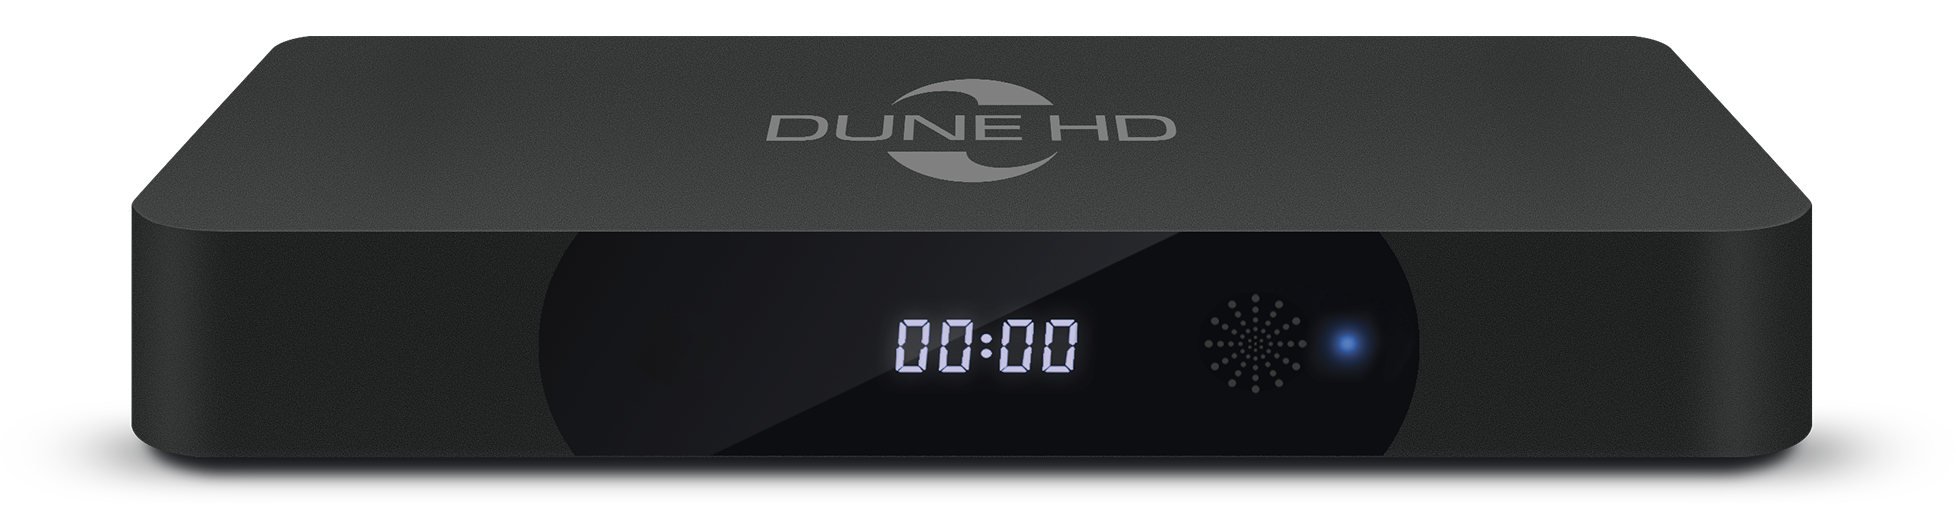 Hình Dune HD Pro 4K - Thiết Bị Nghe Nhìn An Nguyên